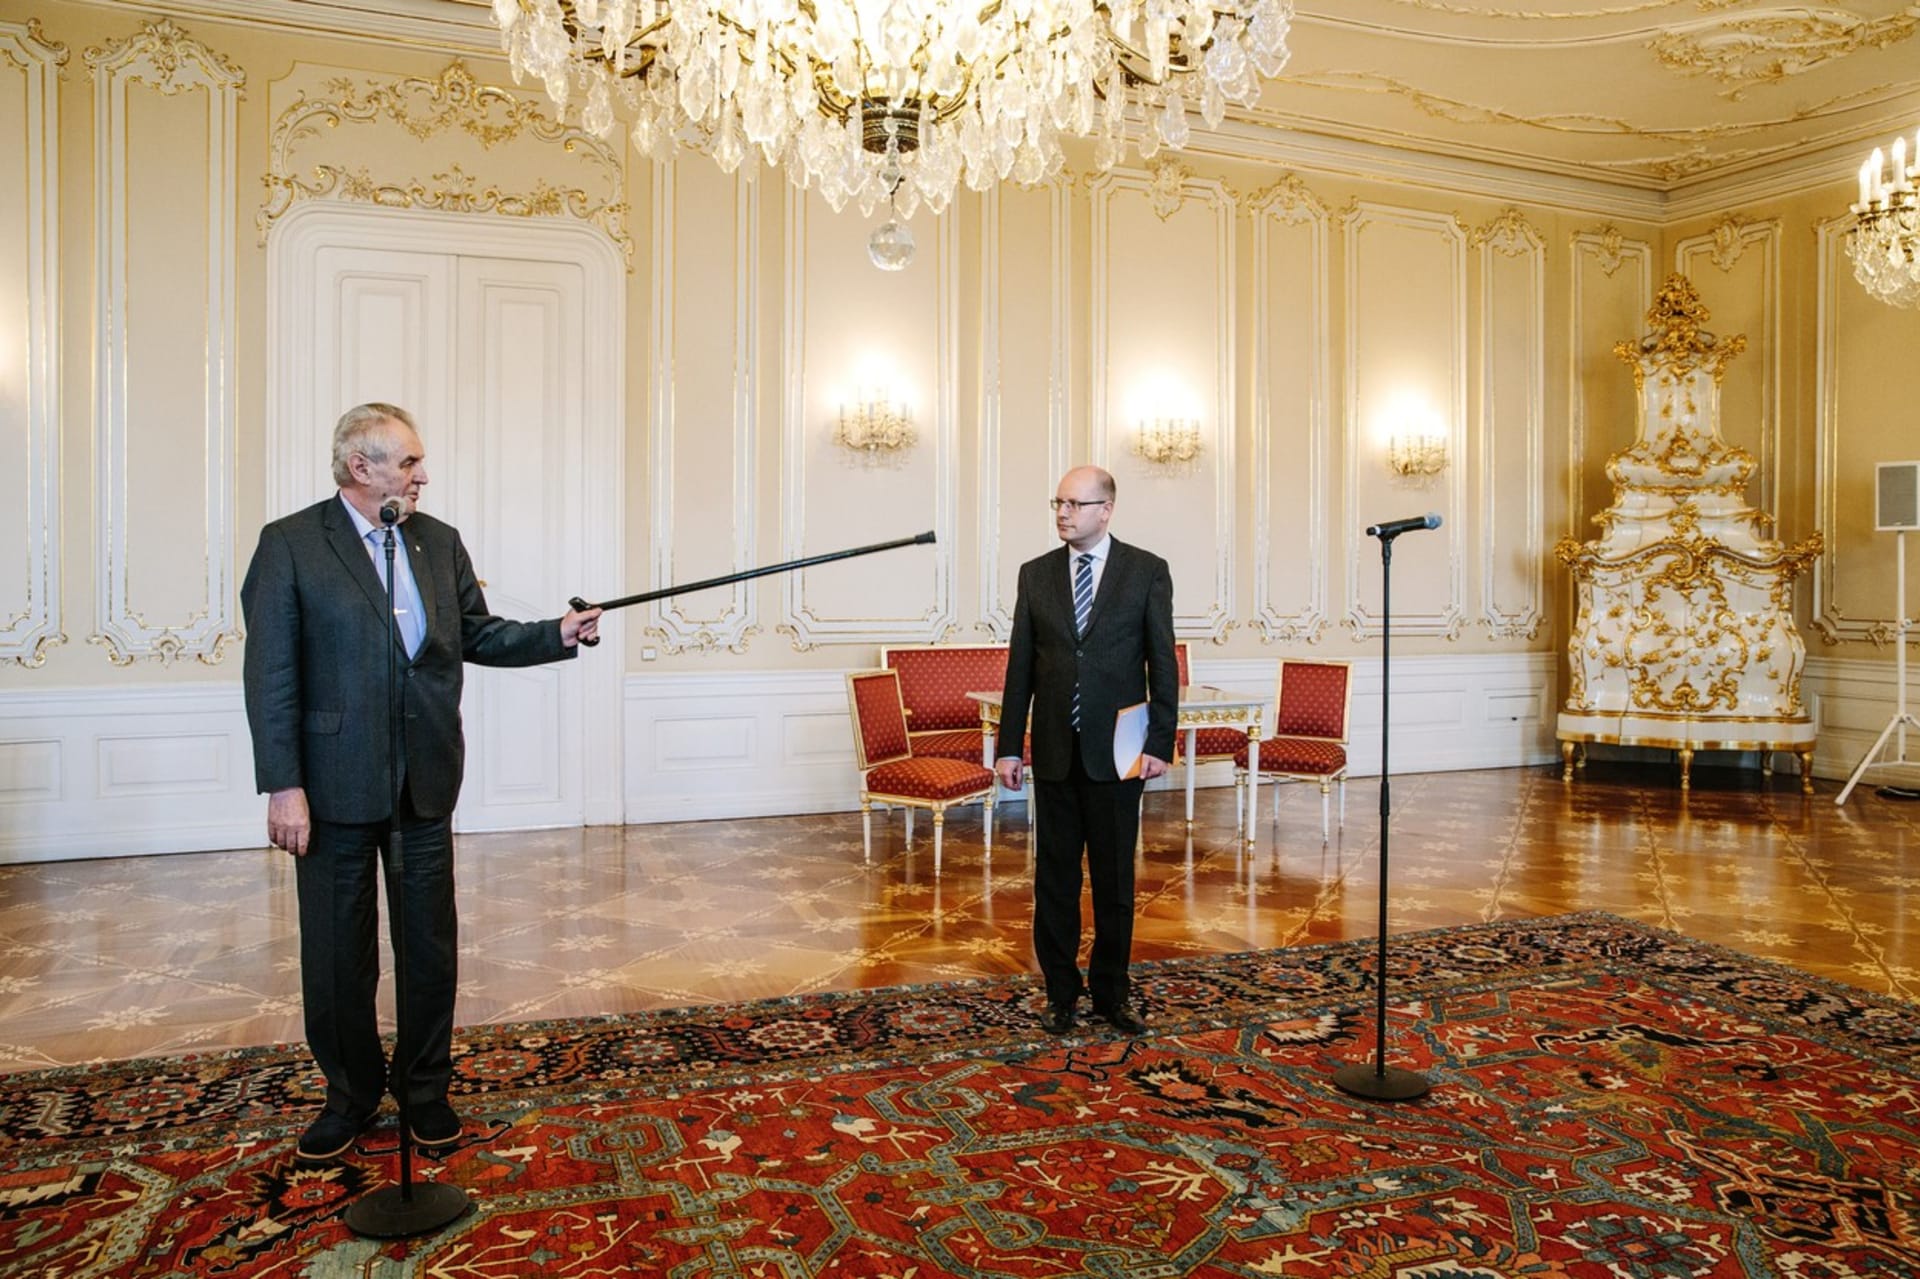 Premiér Bohuslav Sobotka (ČSSD) neměl vřelé vztahy ani s prezidentem Zemanem, který je dalším hostem večeře.